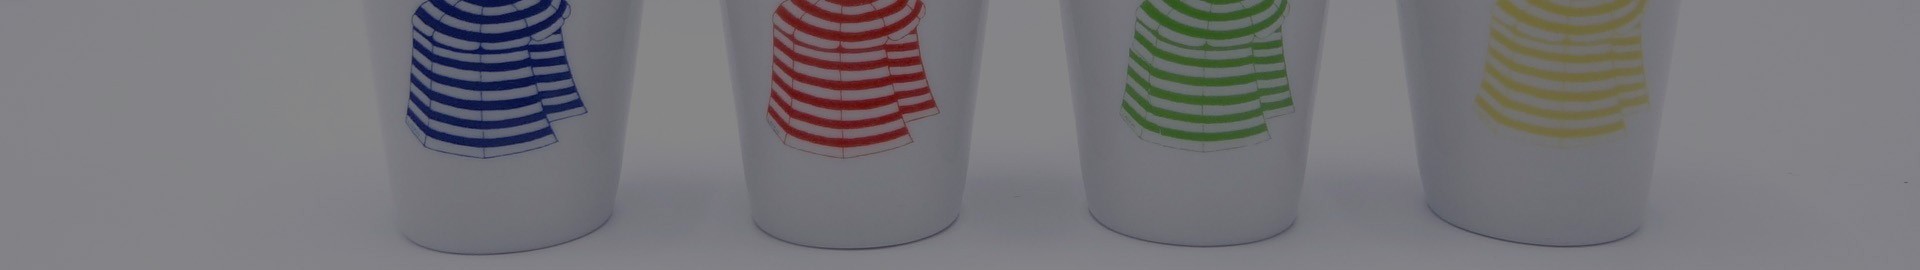 Plats et de tasses en porcelaine pour des tables gaies et créatives